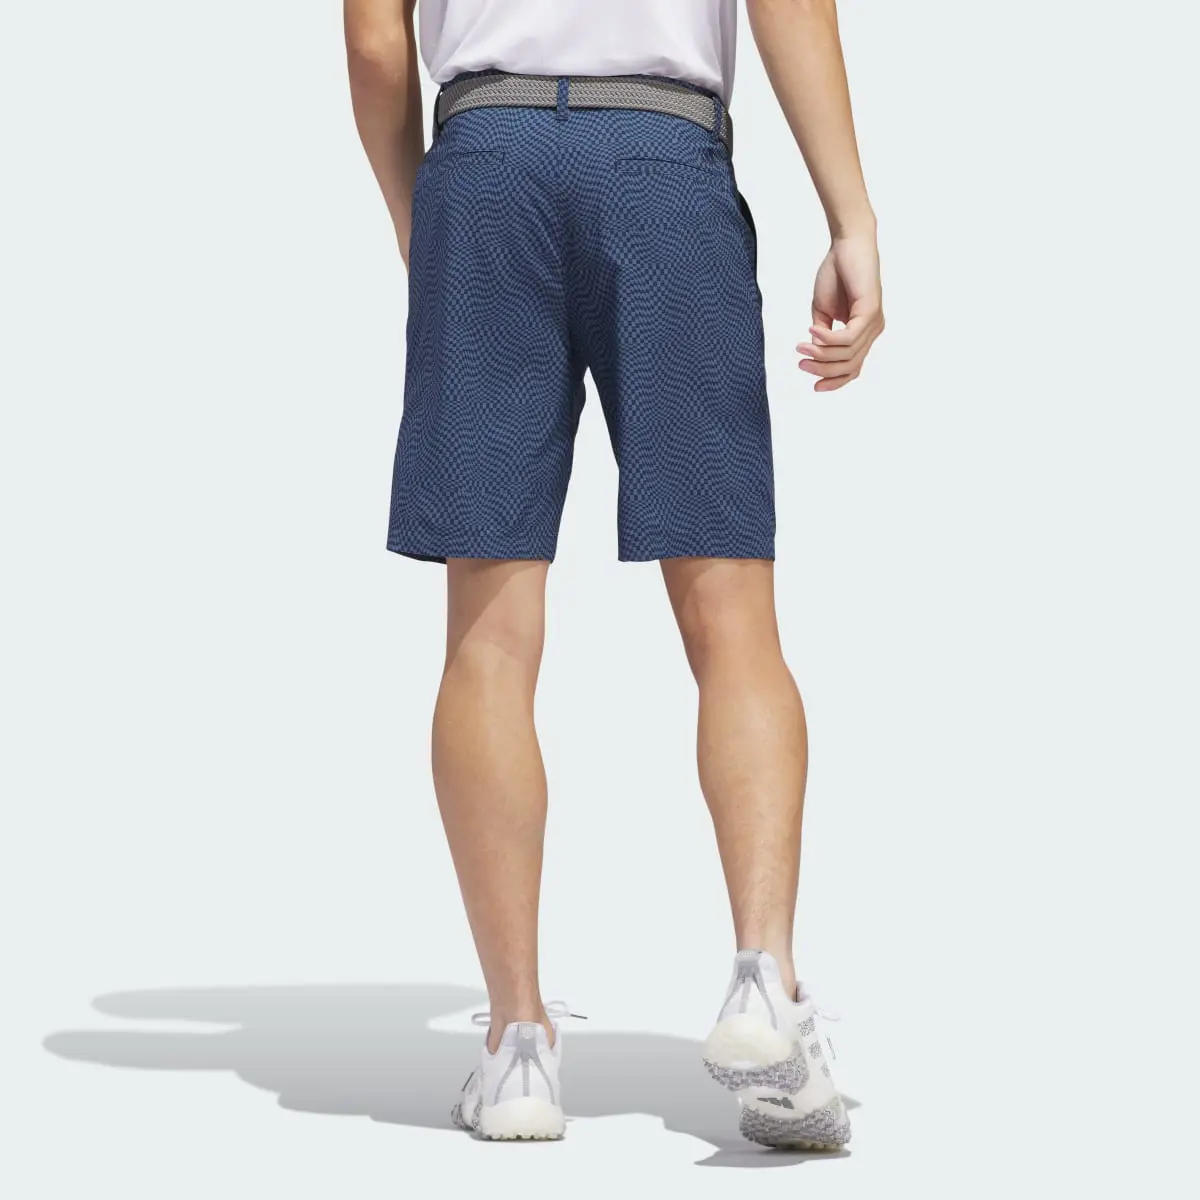 Adidas Ultimate365 Printed Shorts. 2